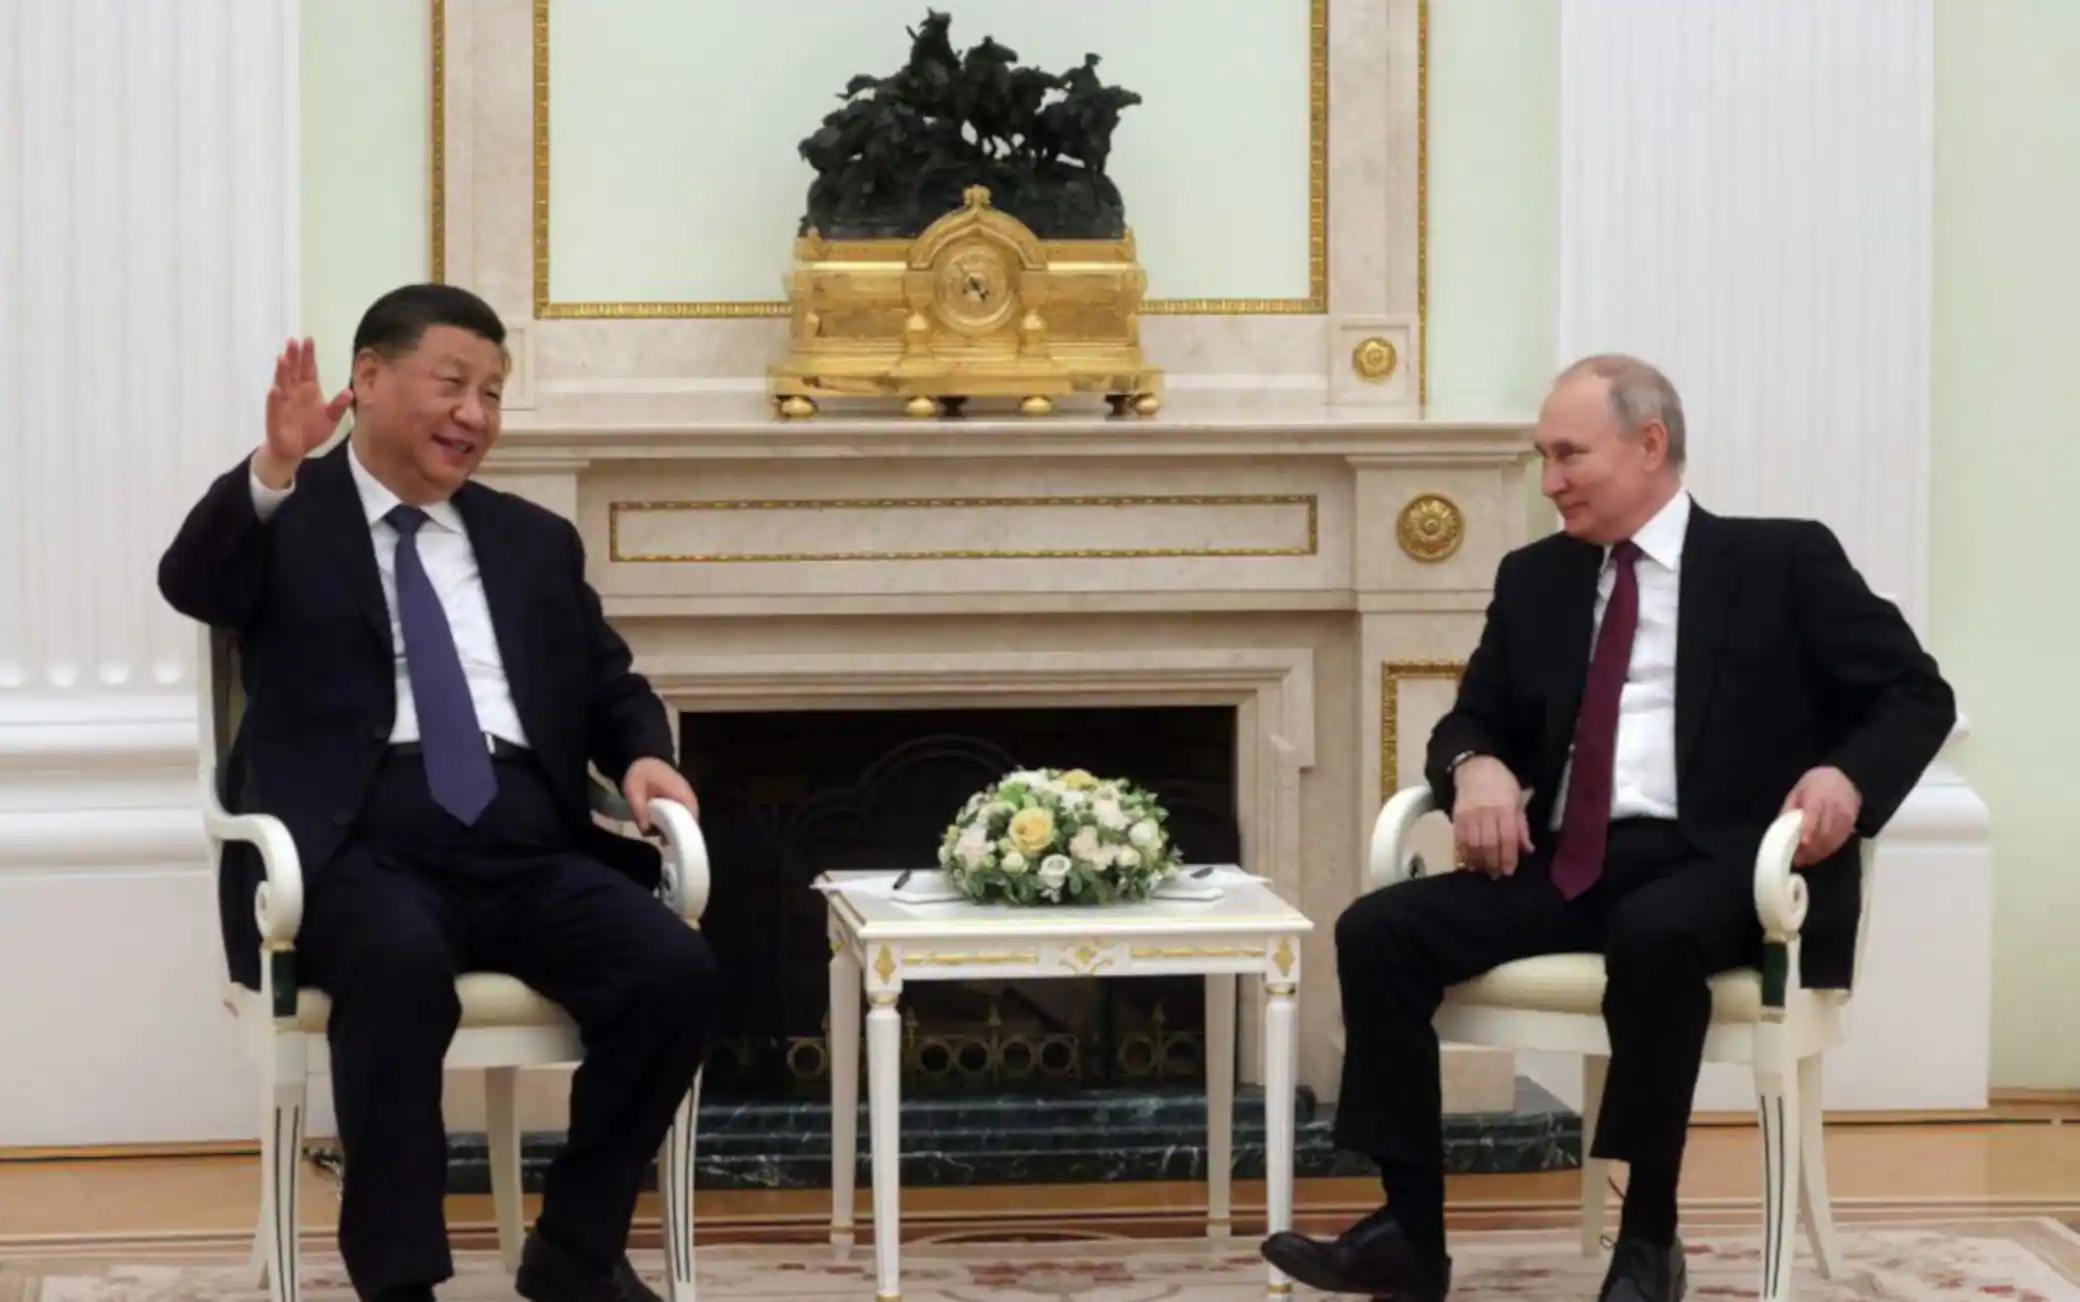 Secondo giorno di incontri a Mosca per Xi Jinping: ieri colloquio di quasi 5 ore con Putin